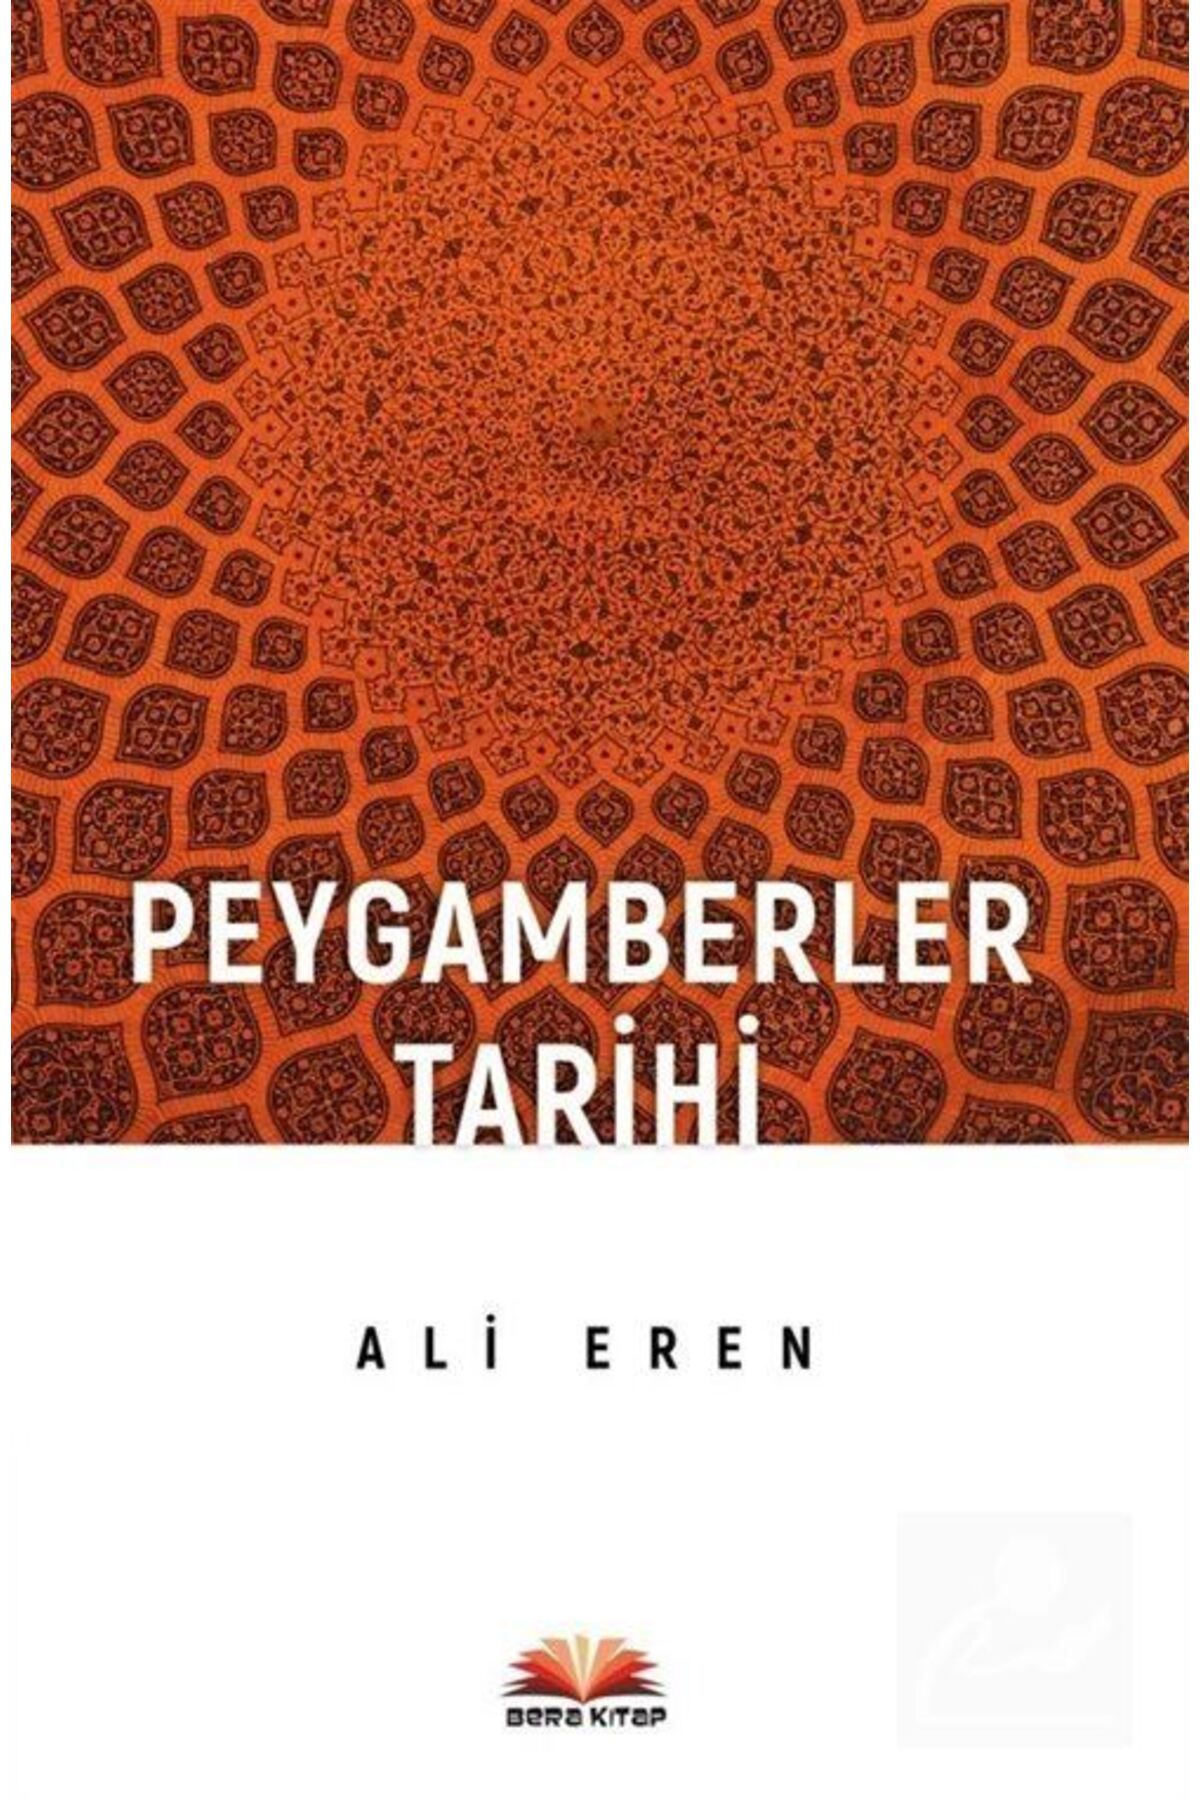 Bera kitap Peygamberler Tarihi - Ali Eren